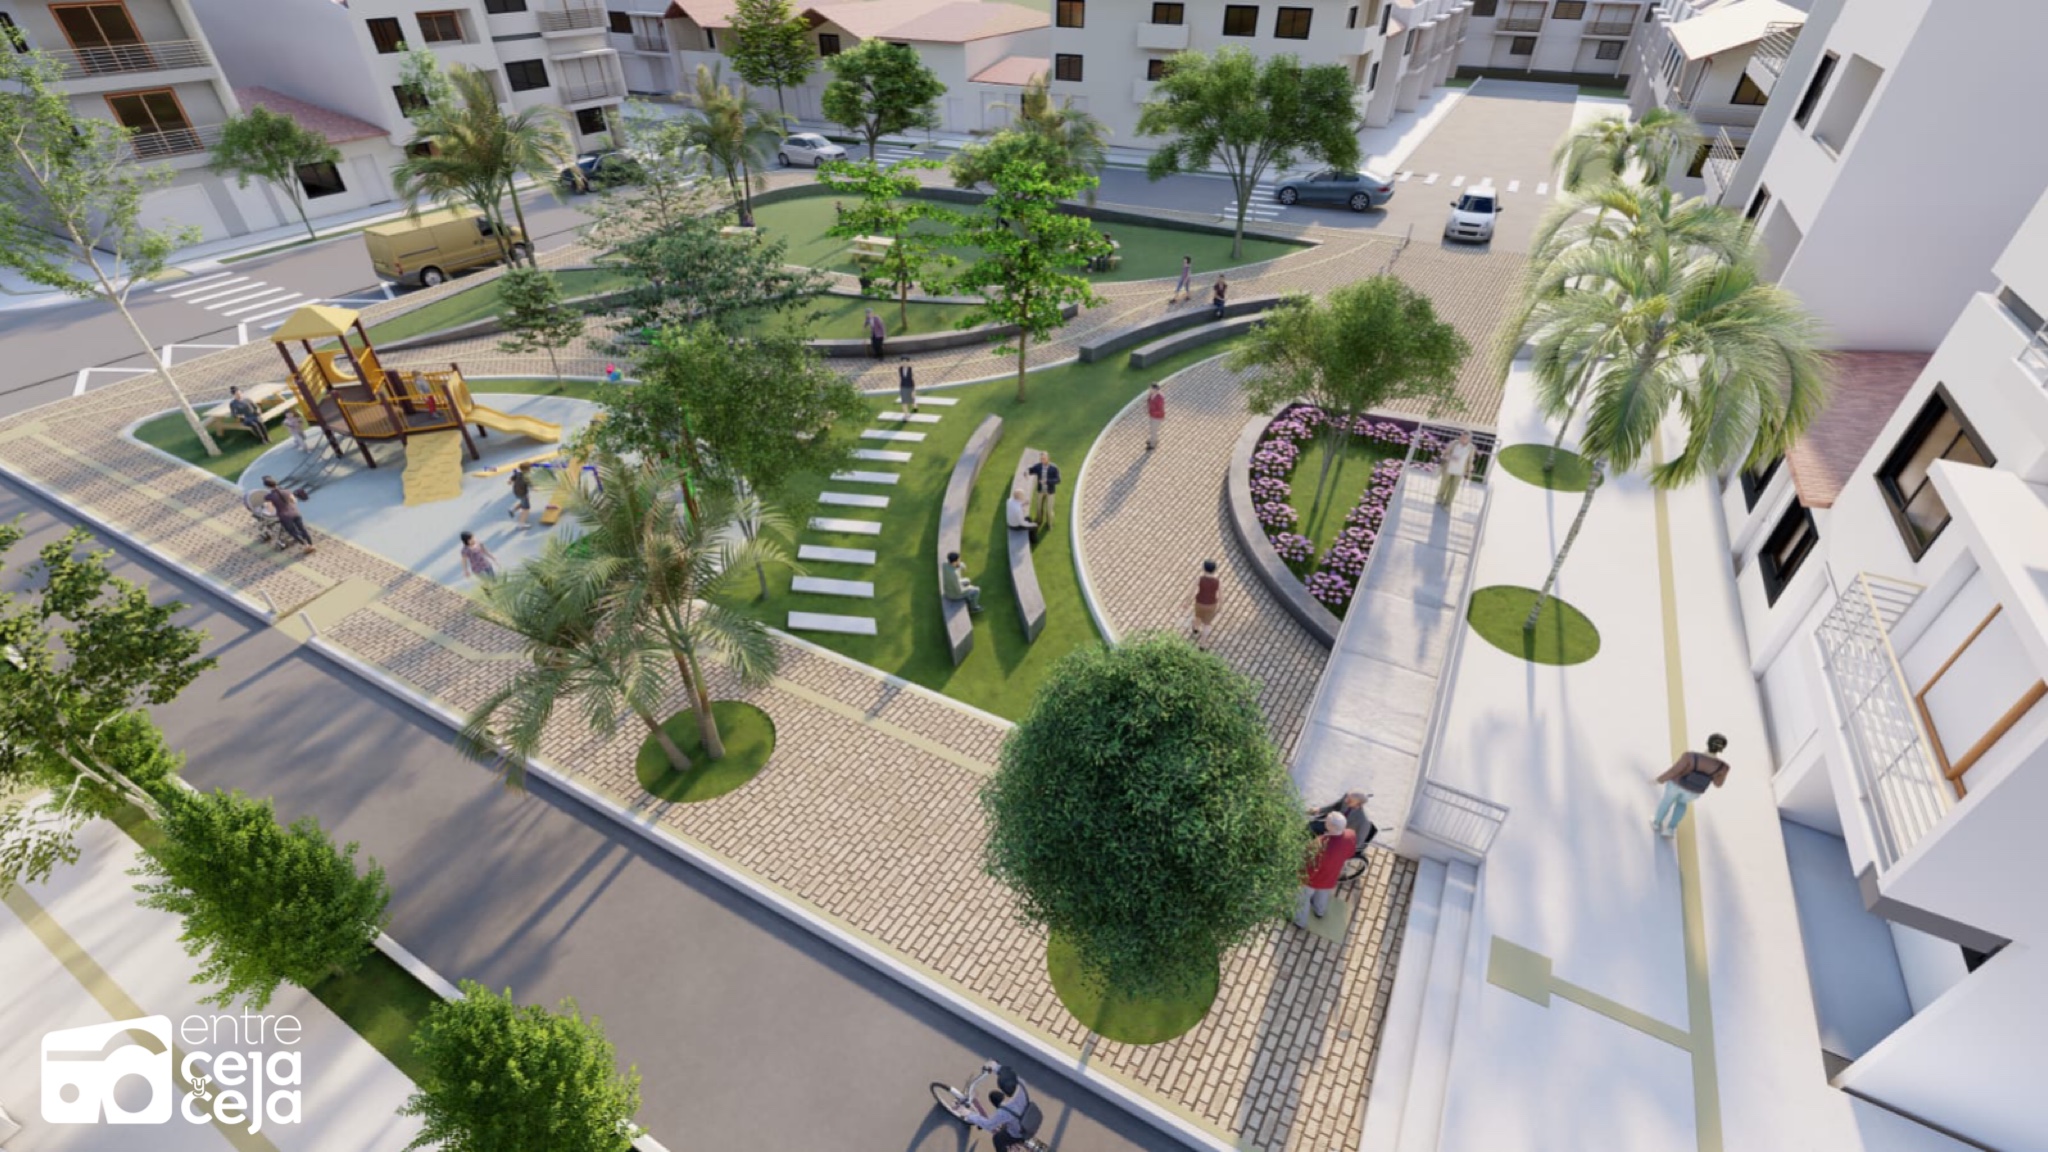 En Rionegro iniciarán las obras de modernización del parque de la Primera Etapa